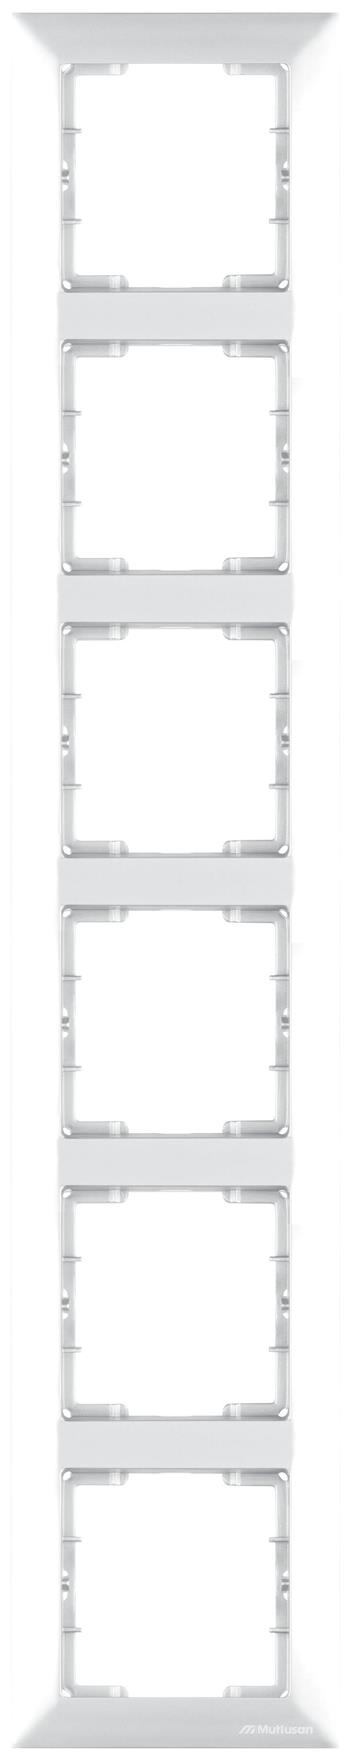 6fach Rahmen Weiß vertikal (CANDELA Standard)